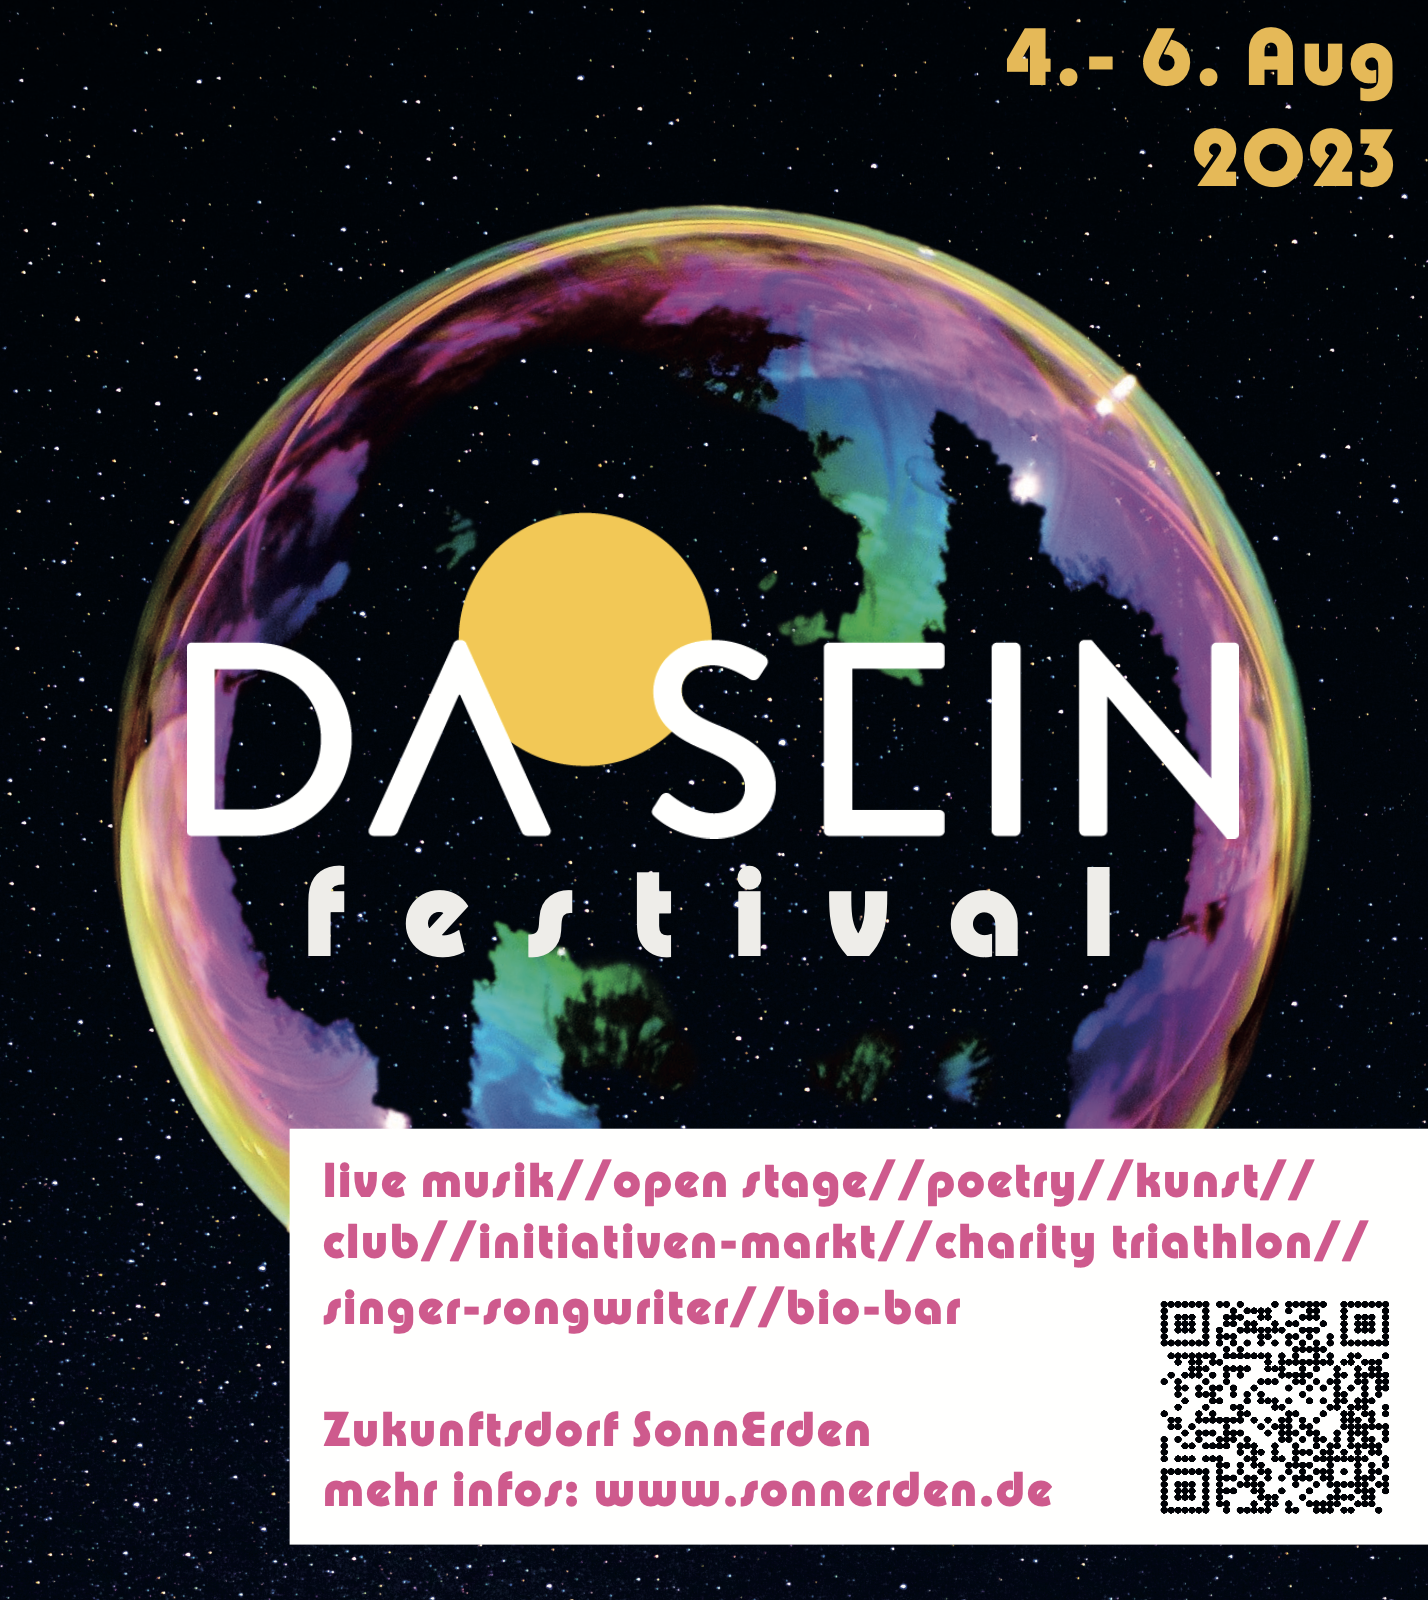 DaSein Festival vom 04.-06. August 2023<br />
Mit<br />
live musik//open stage//poetry//kunst// club//initiativen-markt//charity triathlon//<br />
singer-songwriter//bio-bar<br />
Zukunftsdorf SonnErden<br />
mehr infos: www.sonnerden.de